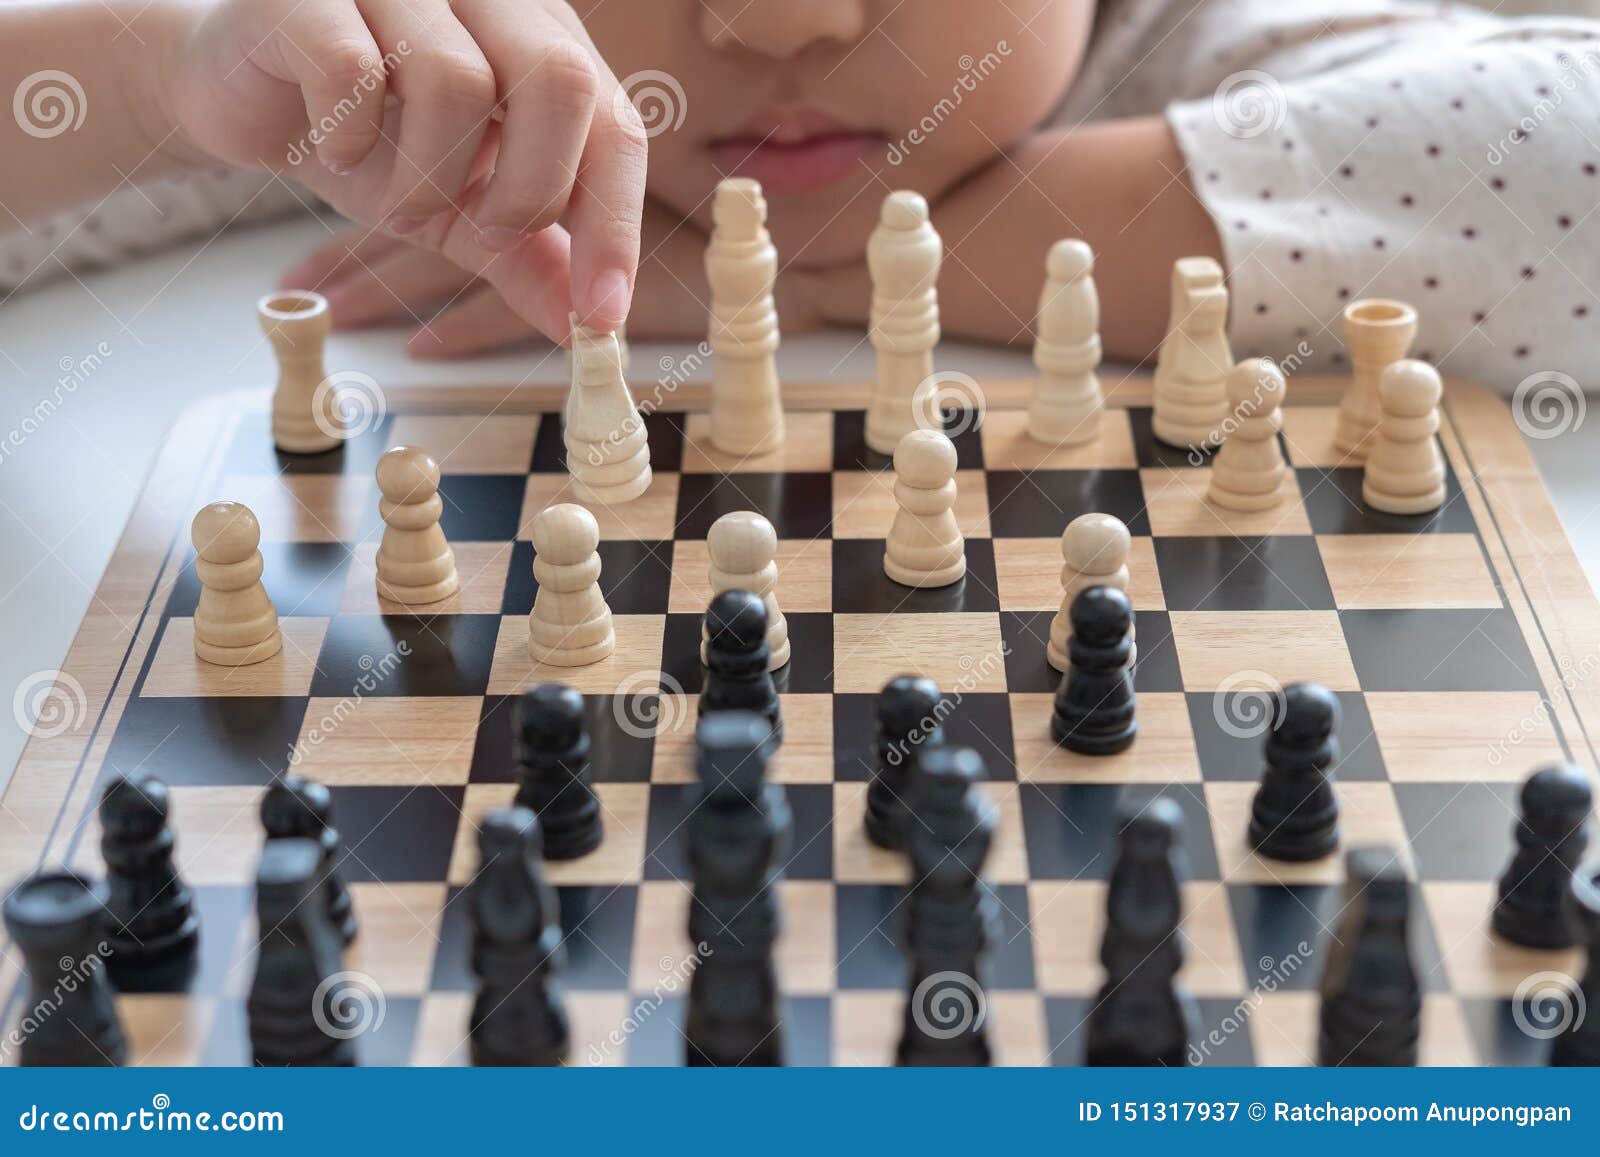 Como jogar xadrez 